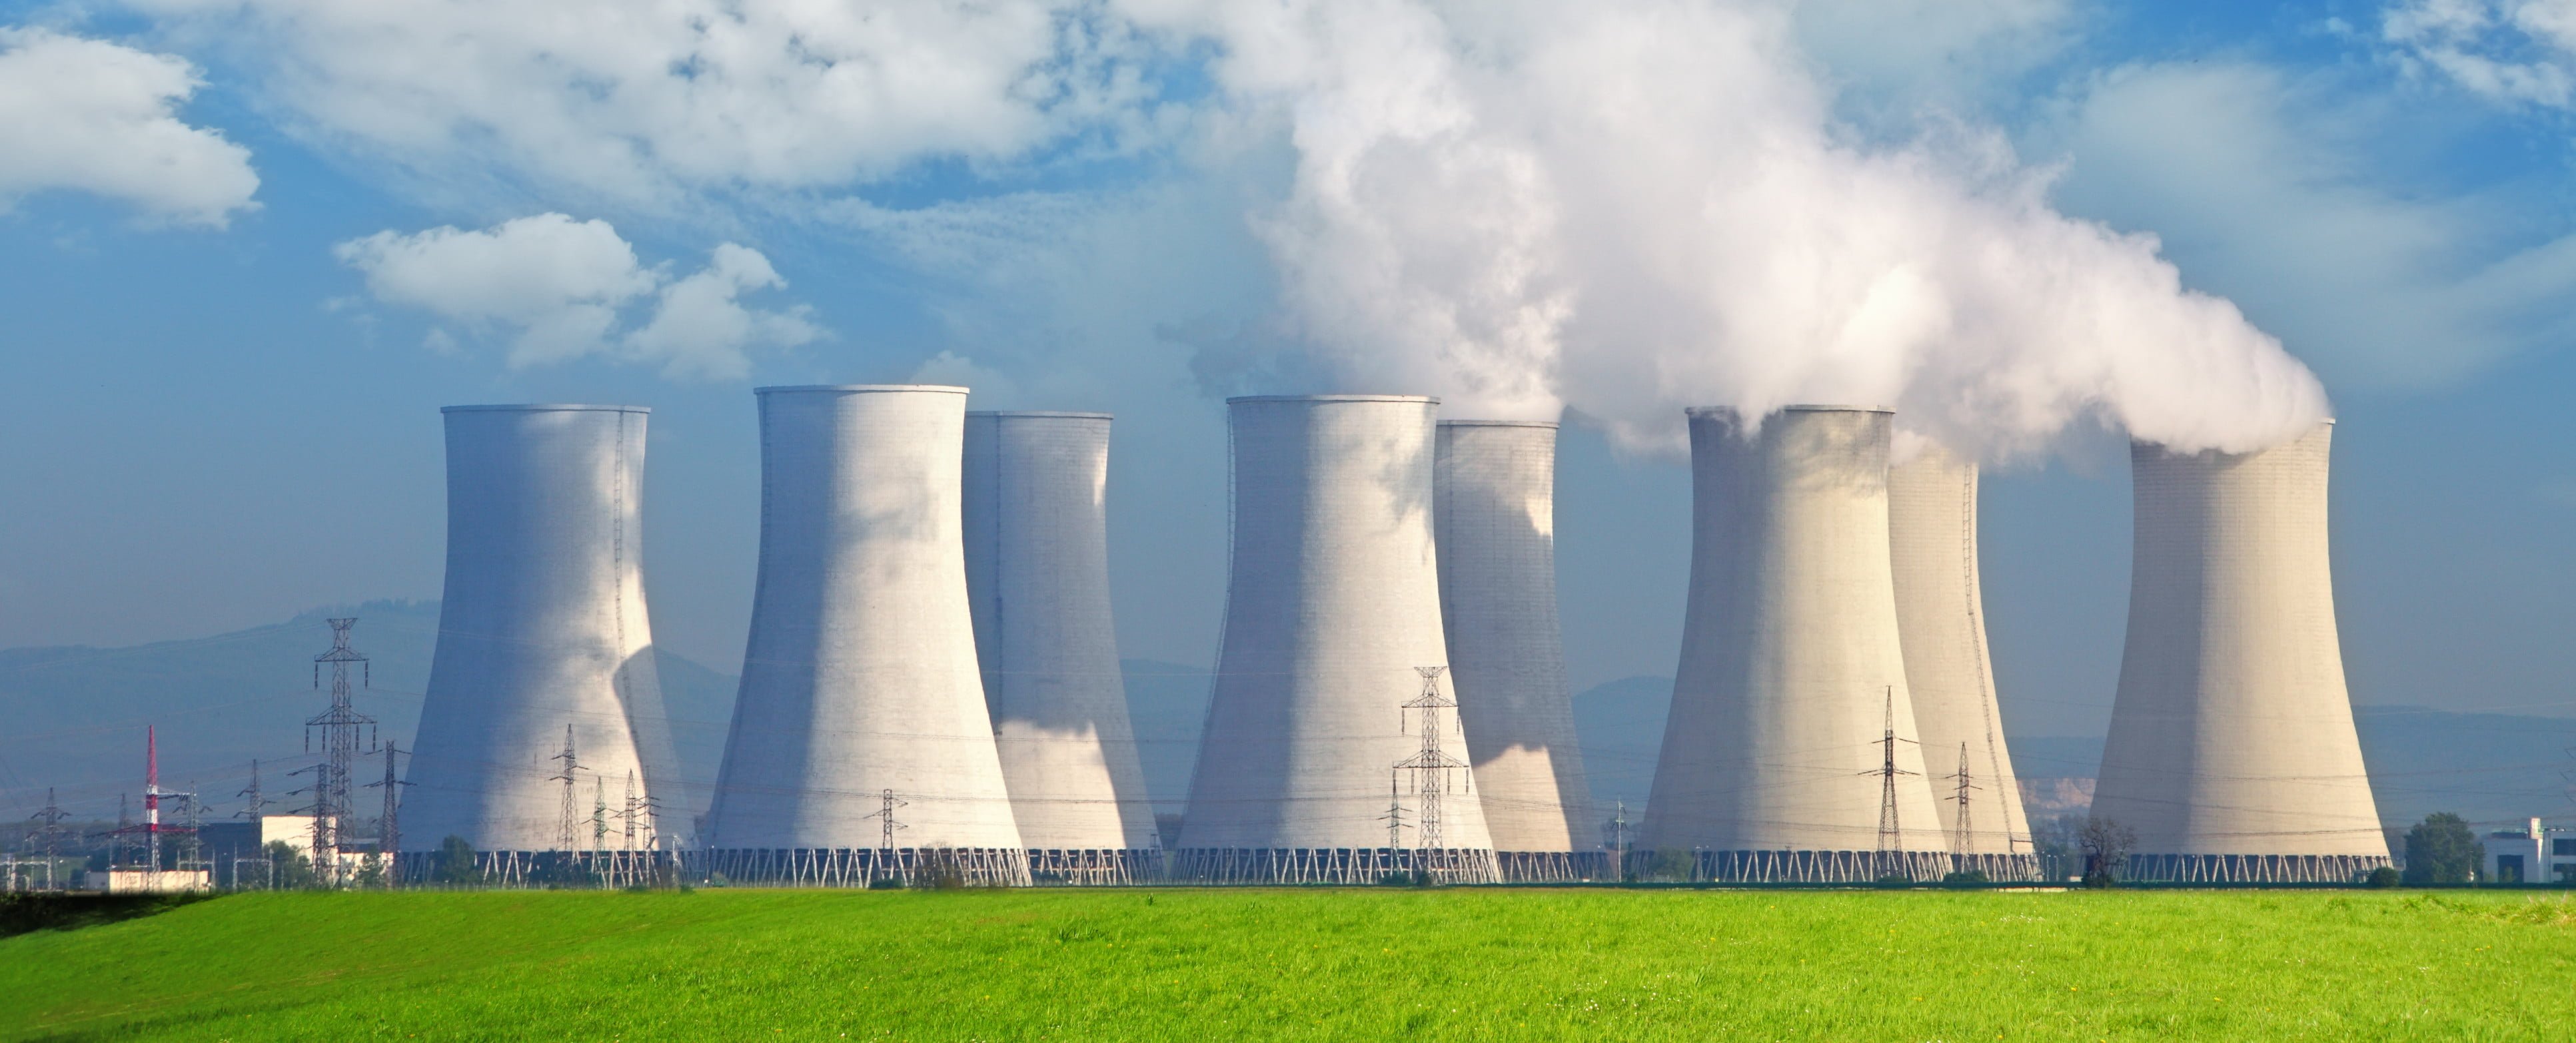 nuclearpowerpic e1431077144736 هل الطاقة النووية آمنة أم خطرة؟ مجلة نقطة العلمية